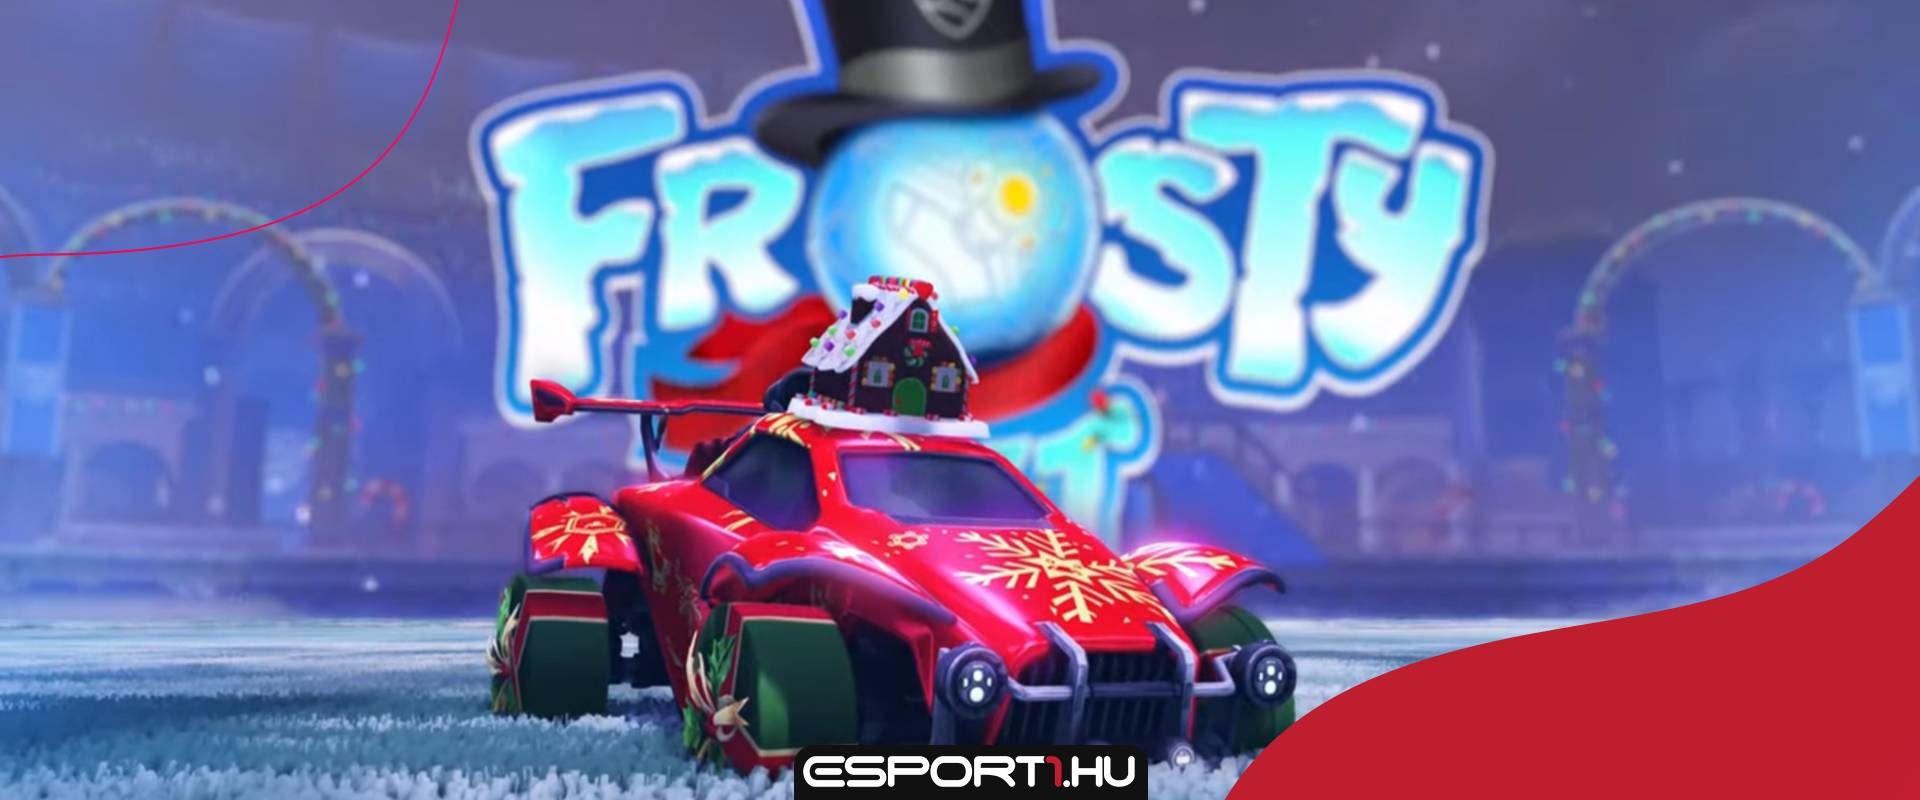 A téli arénákkal és számos ajándék cuccal tér vissza a Frosty Fest a Rocket League-be